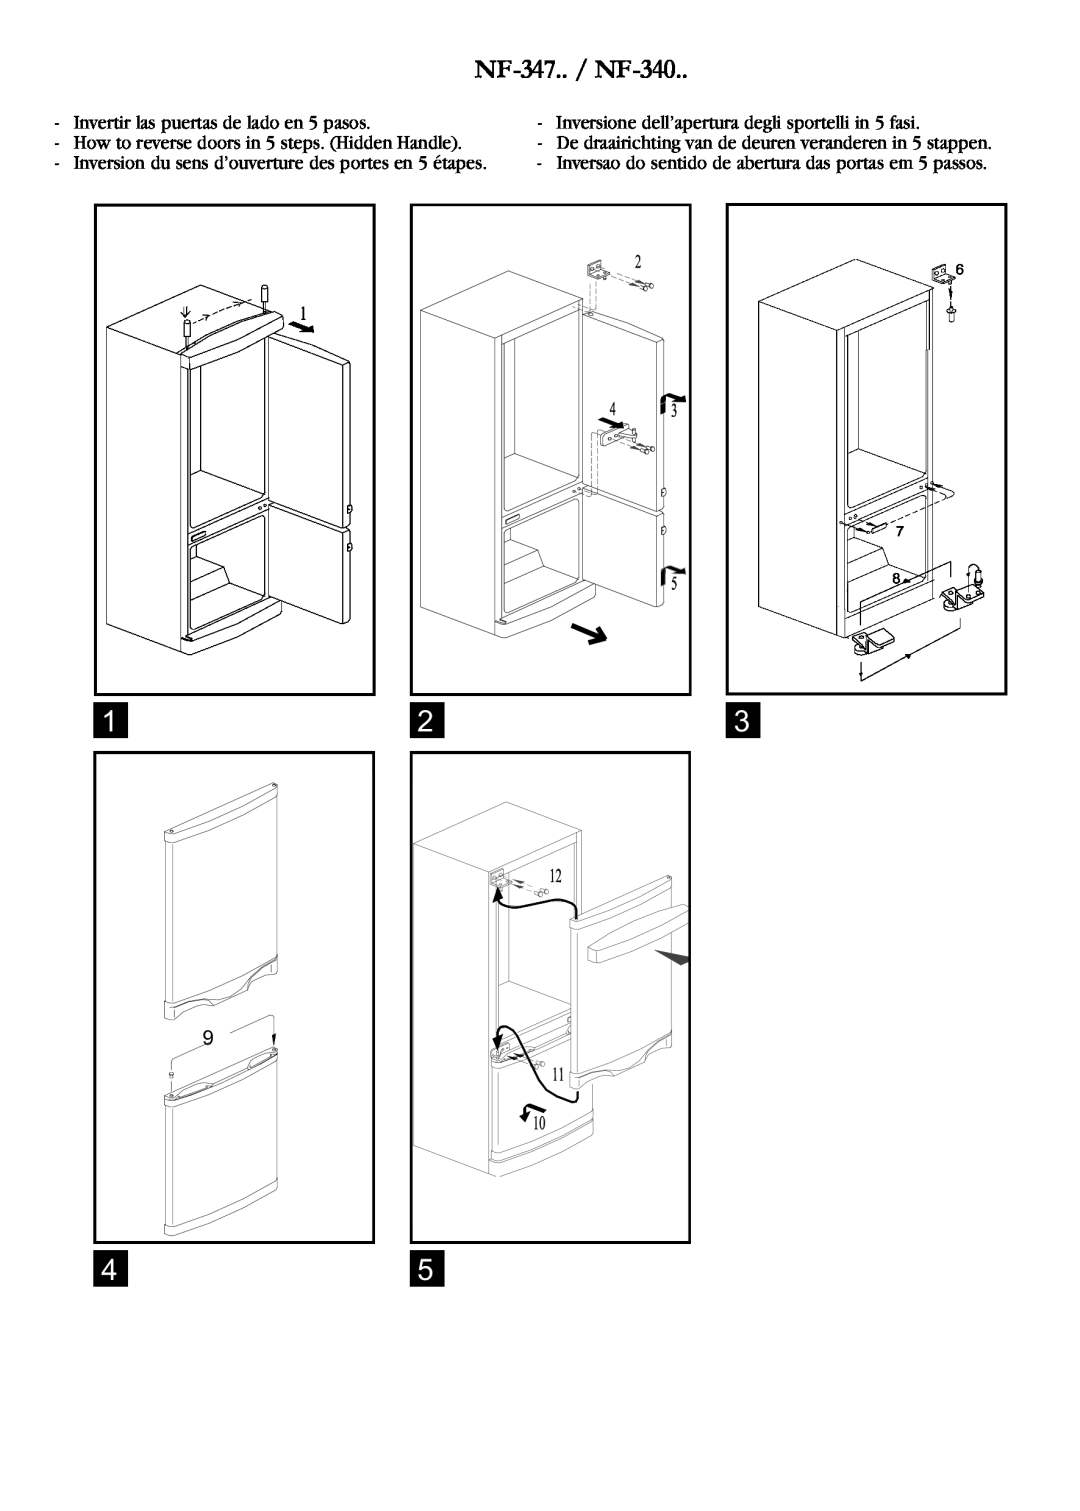 Opteka NF1-370 NF-347.. / NF-340, Invertir las puertas de lado en 5 pasos, How to reverse doors in 5 steps. Hidden Handle 